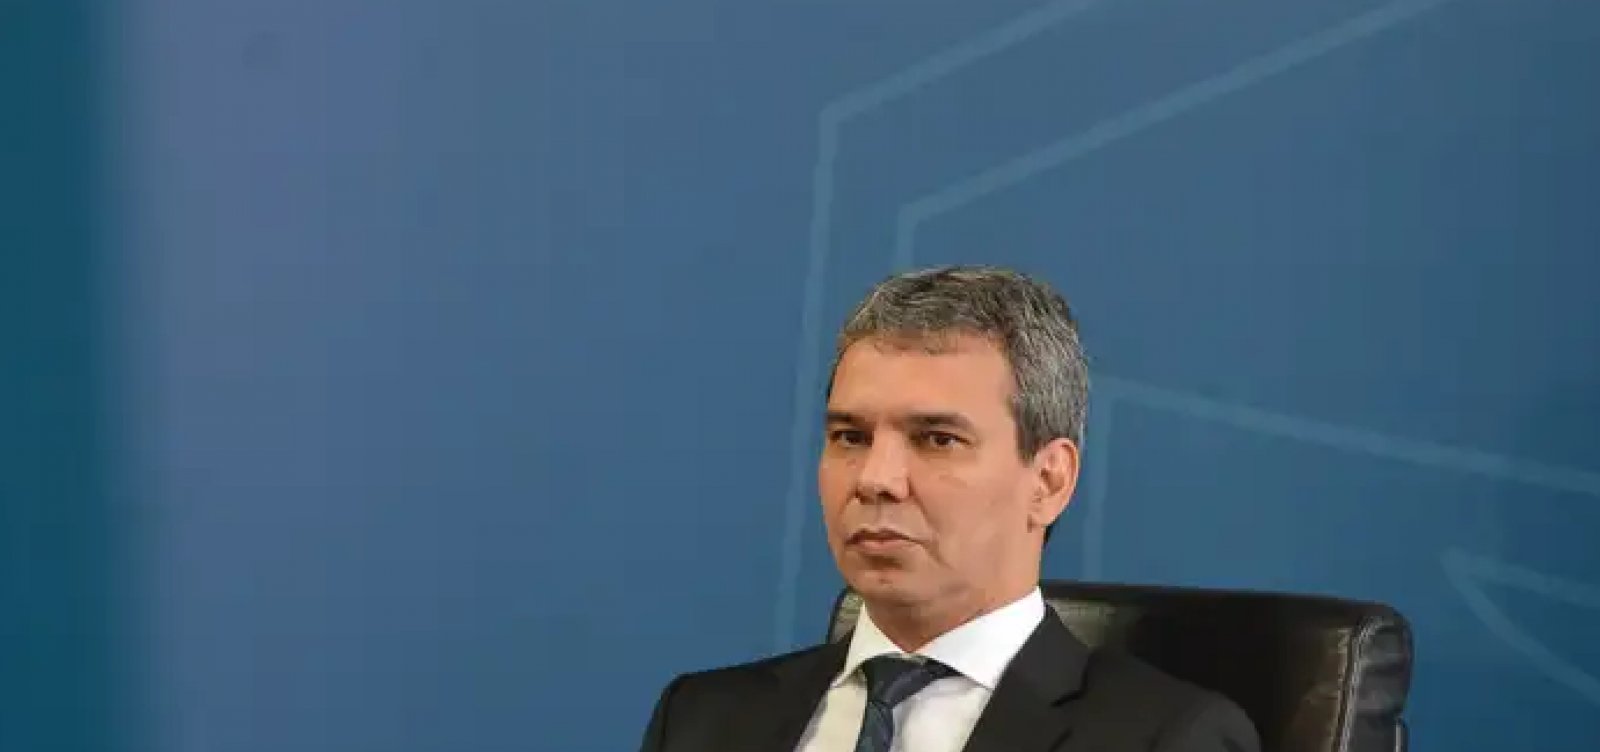 Secretário jurídico do governo, Wellington César Lima e Silva é indicado para cargo na Petrobras